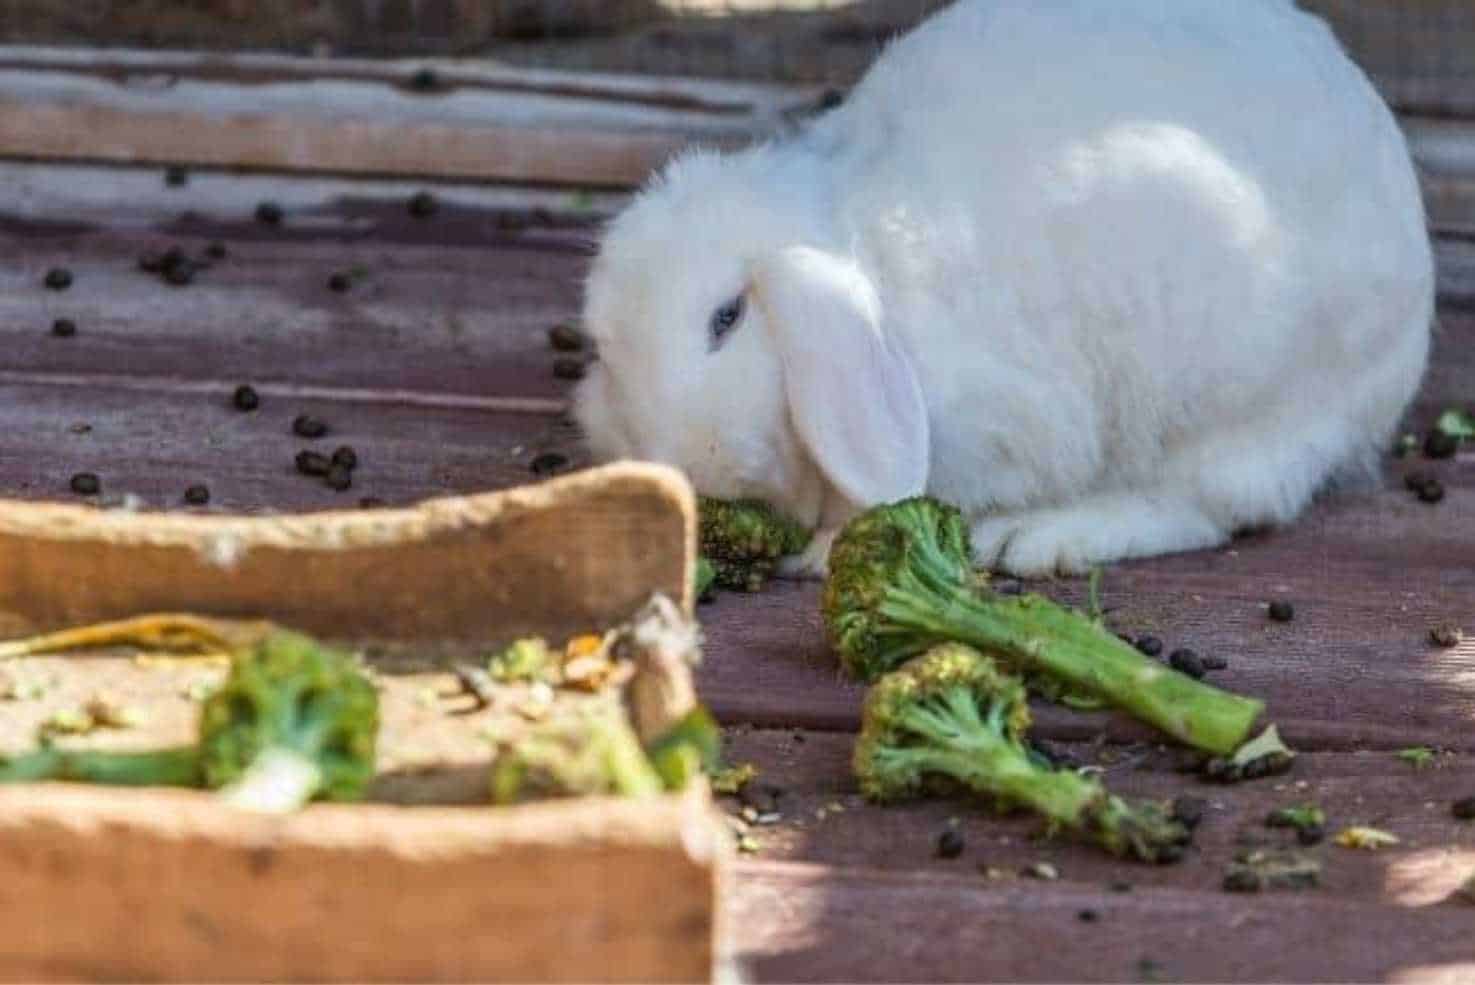 can bunnies eat broccoli stems